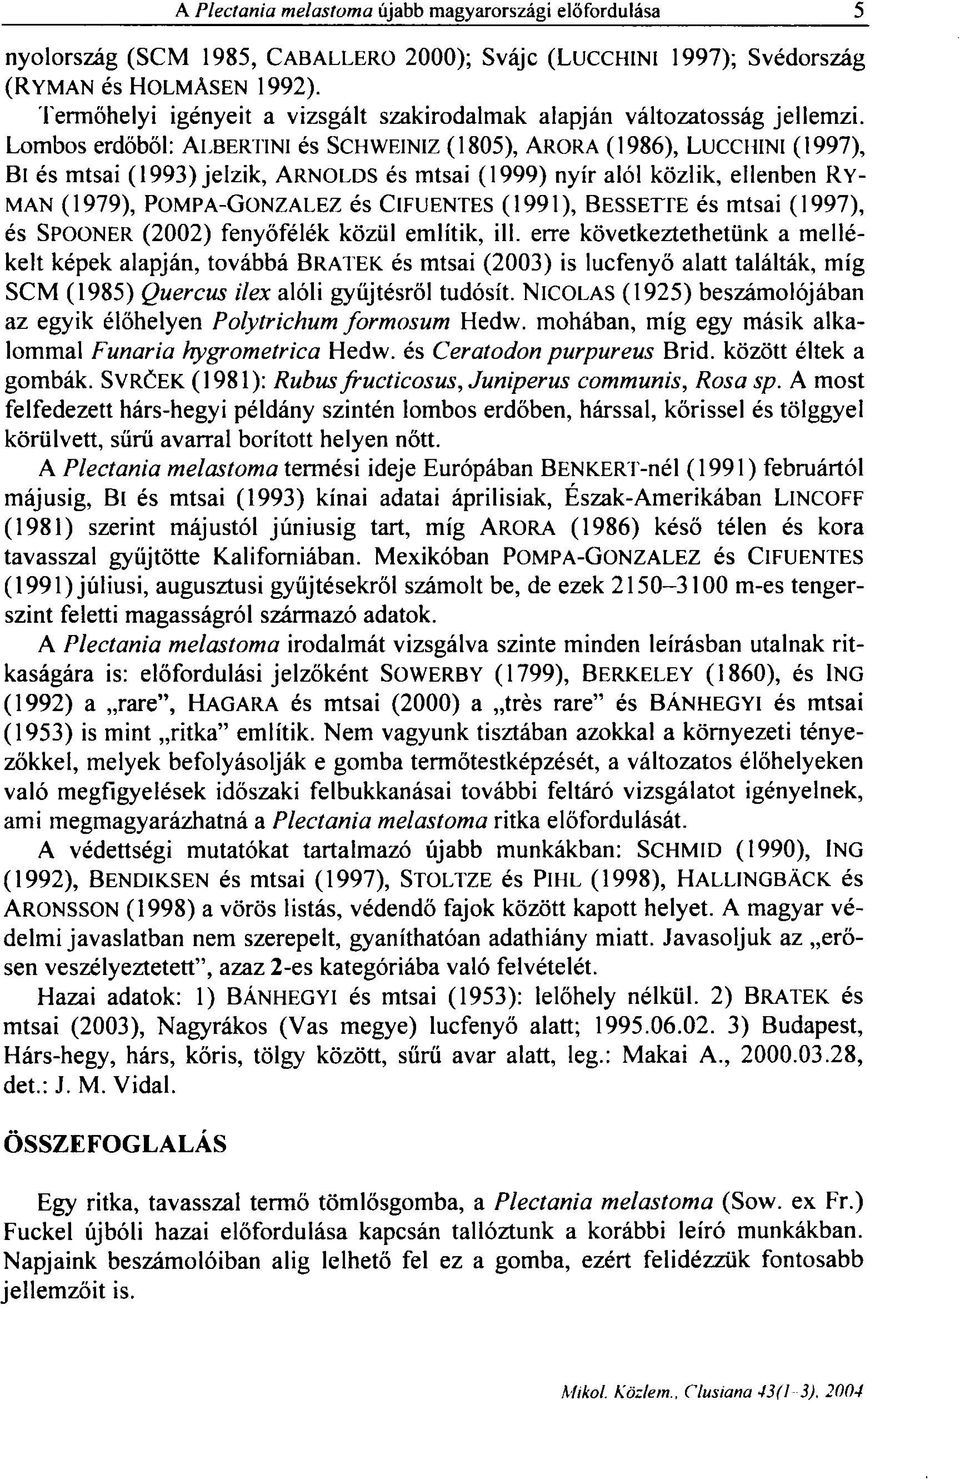 Lombos erdőből: ALBERTIN1 és SCHWEINIZ (1805), ARORA (1986), LUCCHINI (1997), Bl és mtsai (1993) jelzik, ARNOLDS és mtsai (1999) nyír alól közlik, ellenben RY- MAN (1979), POMPA-GONZALEZ és ClFUENTES